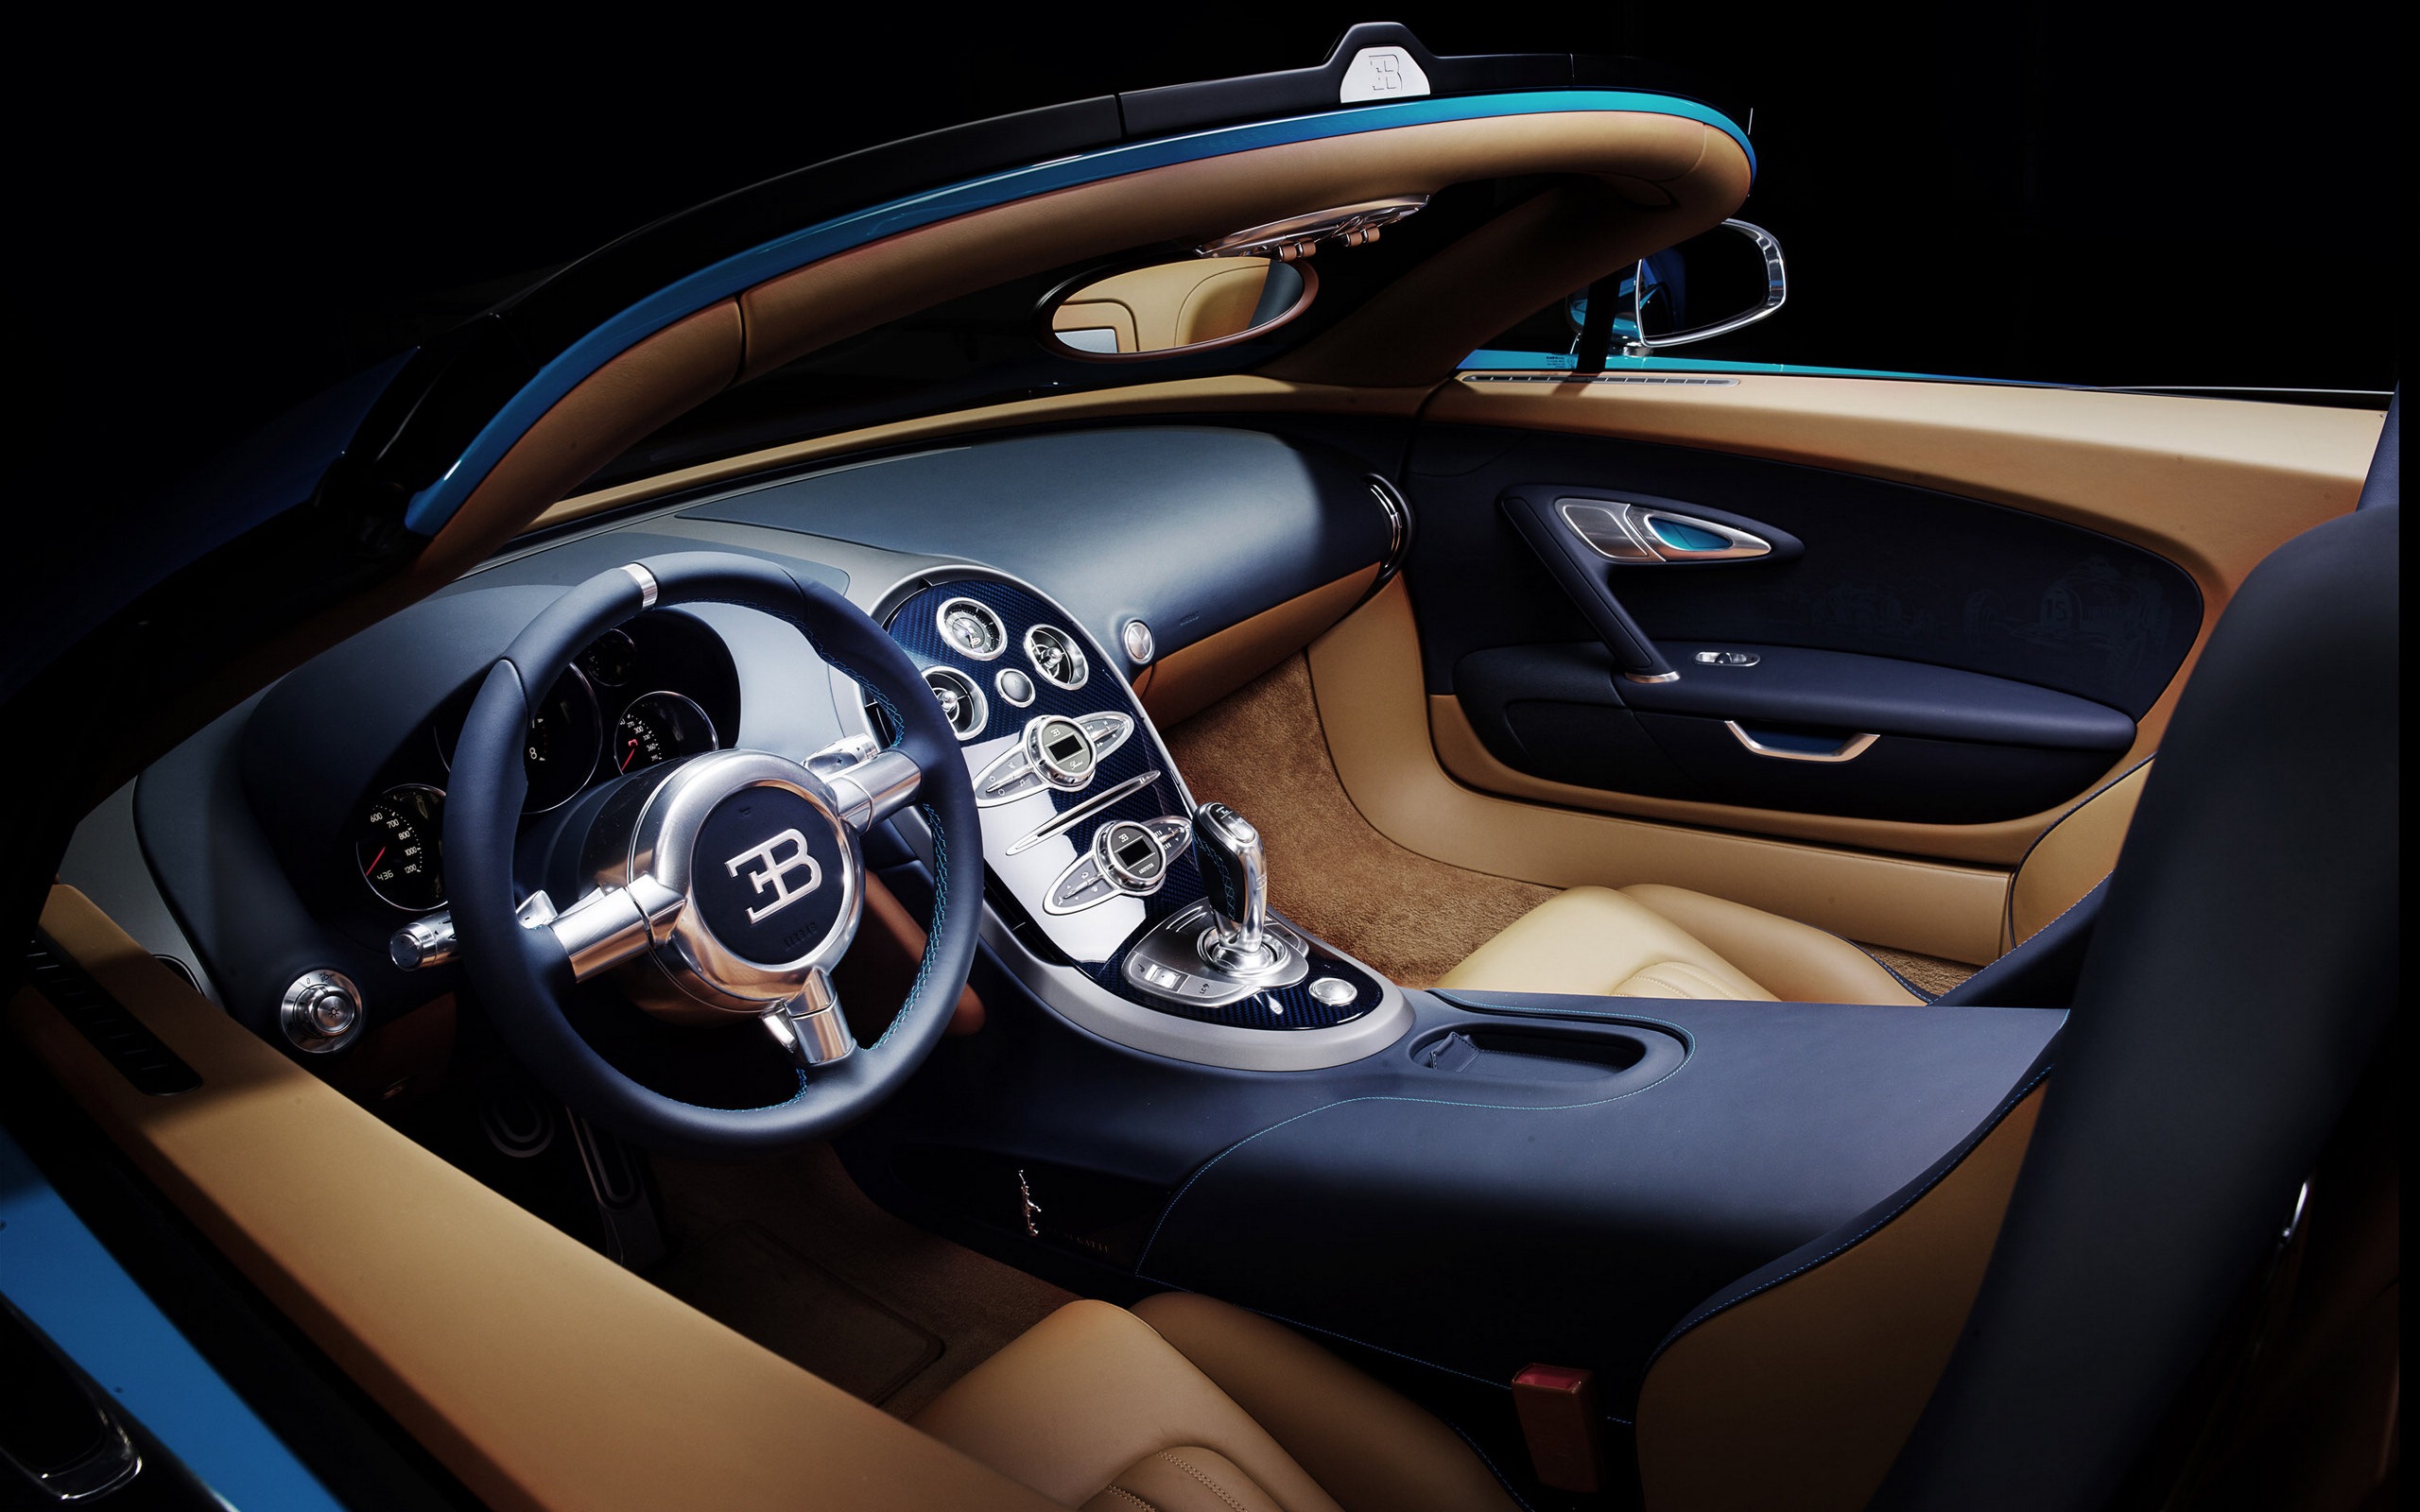 2013 Bugatti Veyron 16.4 Grand Sport Vitesse supercar fondos de pantalla de alta definición #7 - 2560x1600